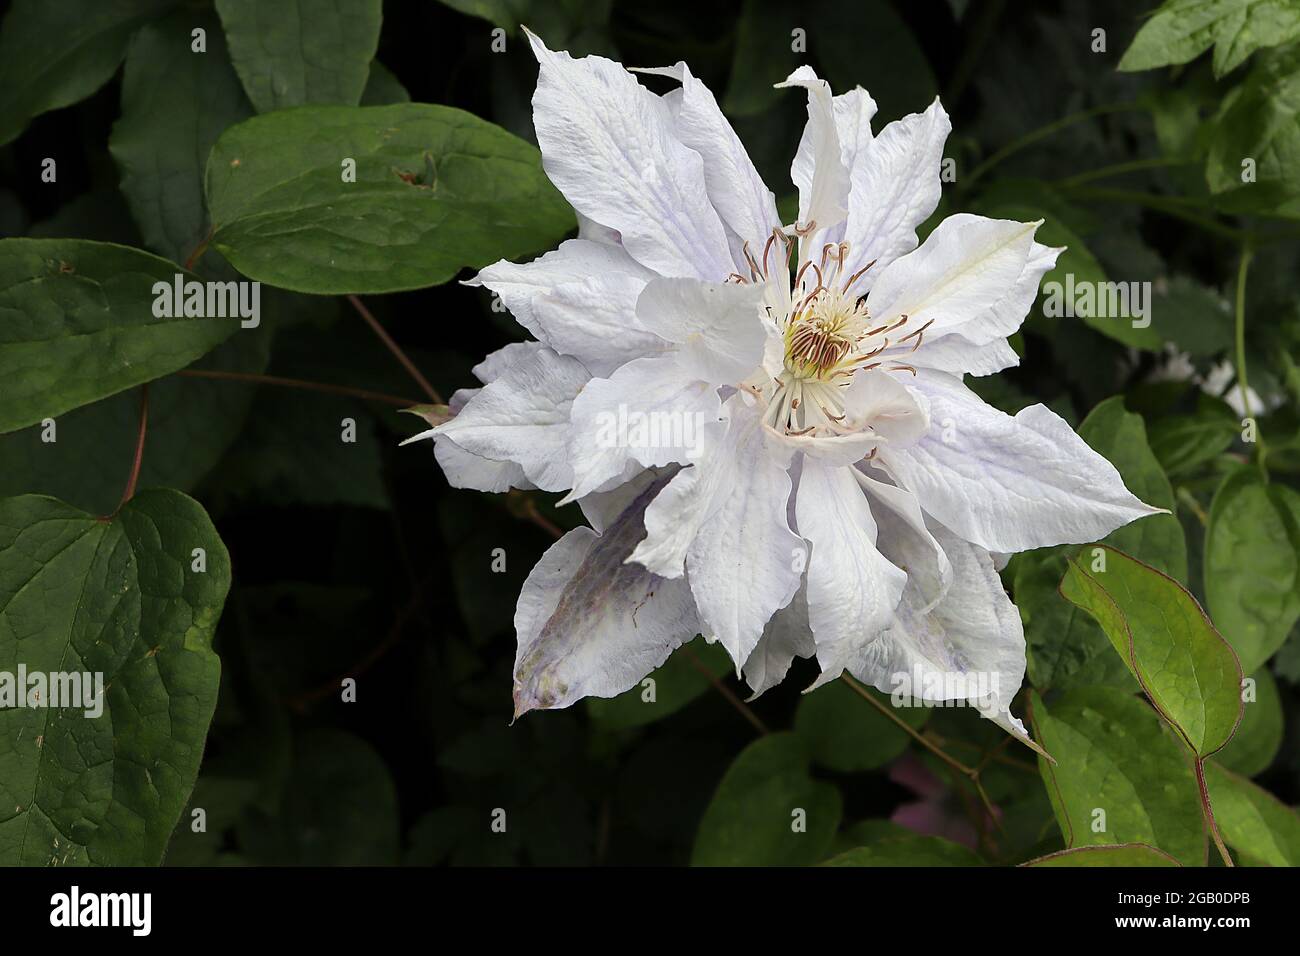 Clematis jackmanii ‘Alba’ Doppelte weiße Clematis mit schwachen violetten Adern und Tönungen, Juni, England, Großbritannien Stockfoto